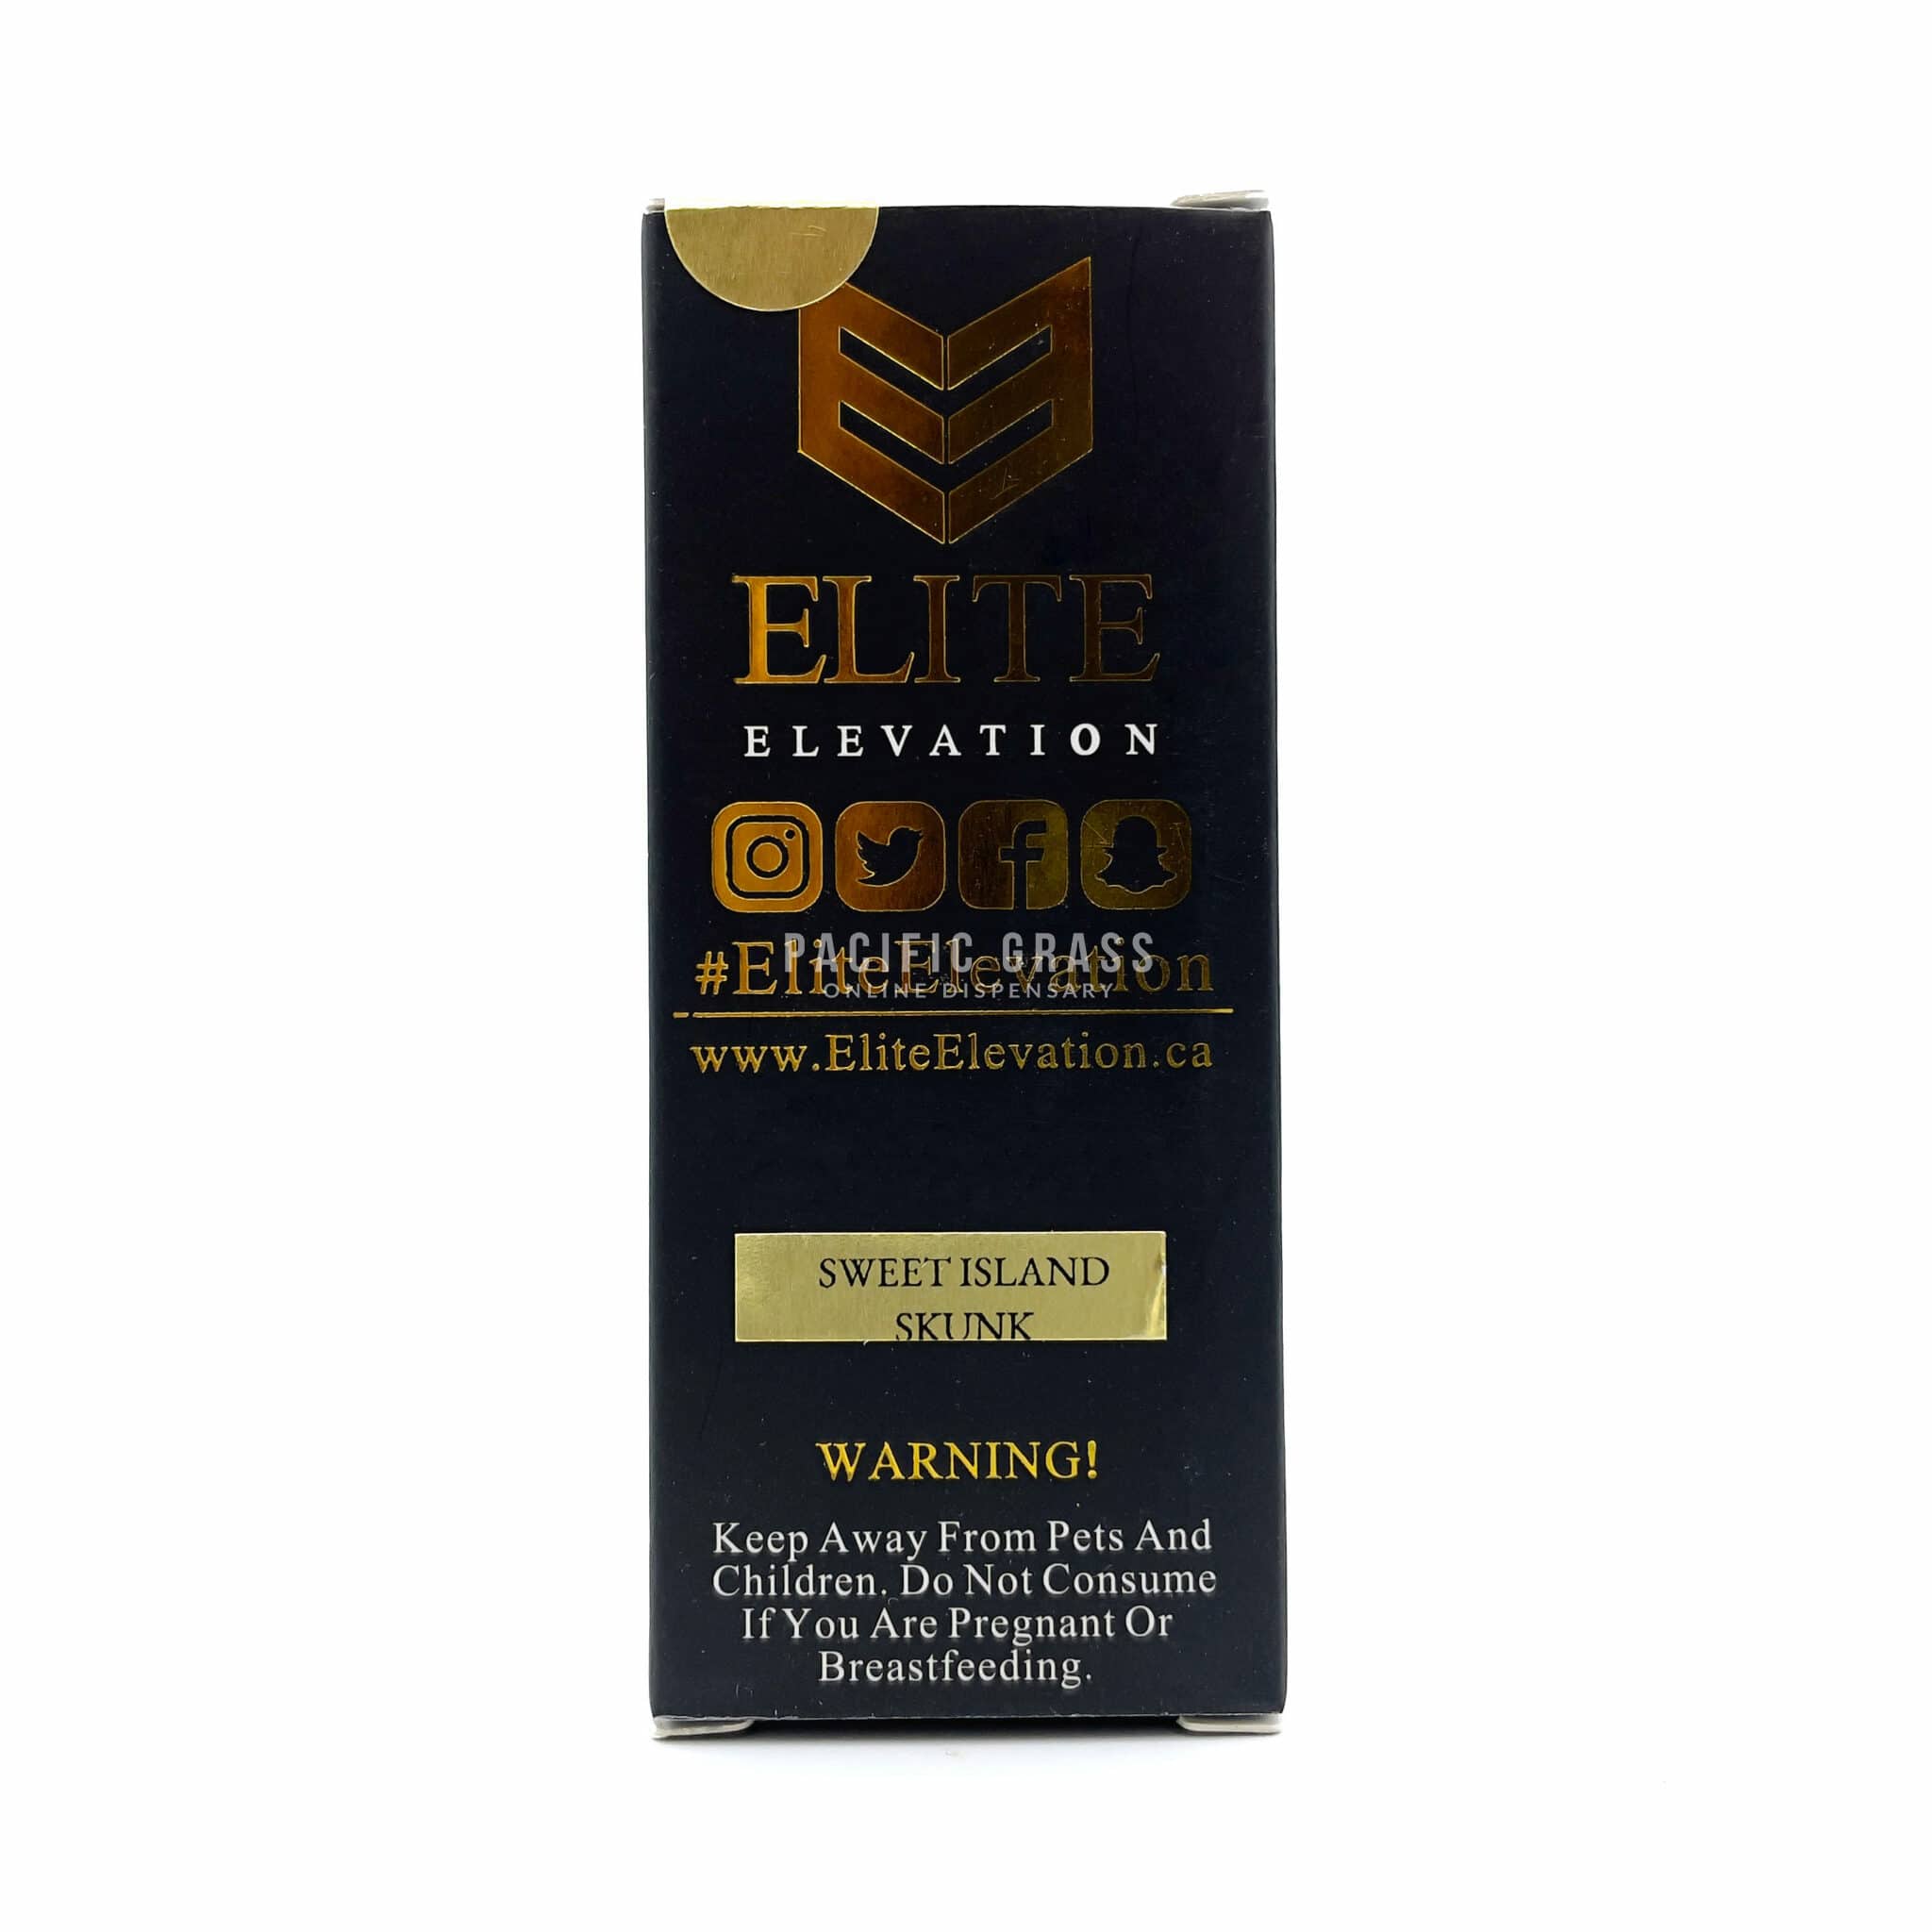 Elite Elevation Live Resin Terp Sauce Cartridge 1200mg Sweet Island Skunk